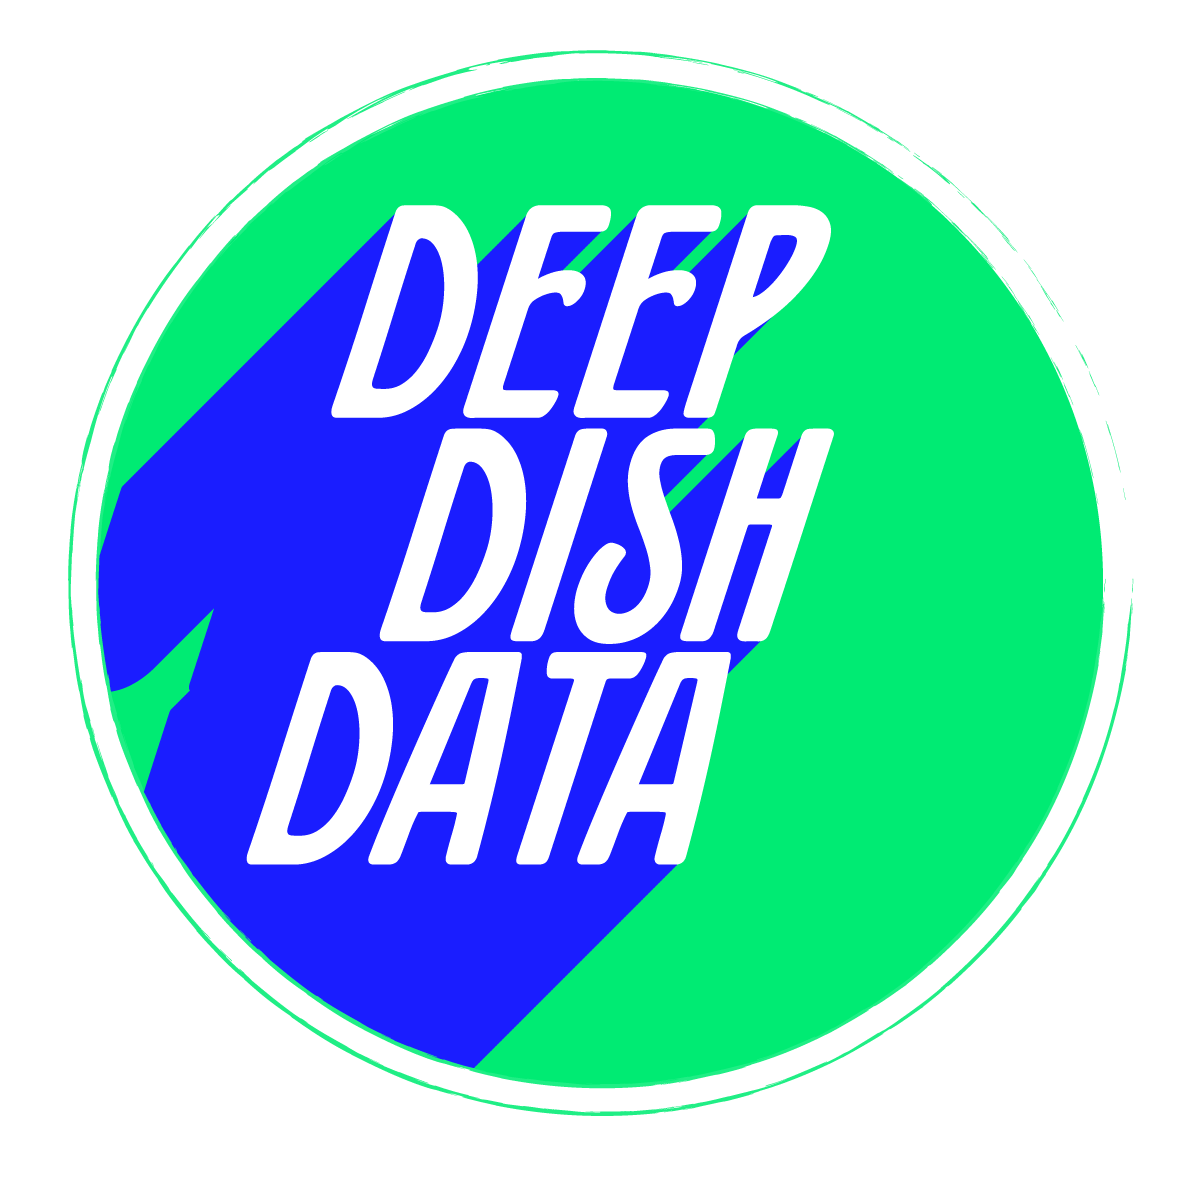 Deep Dish Data